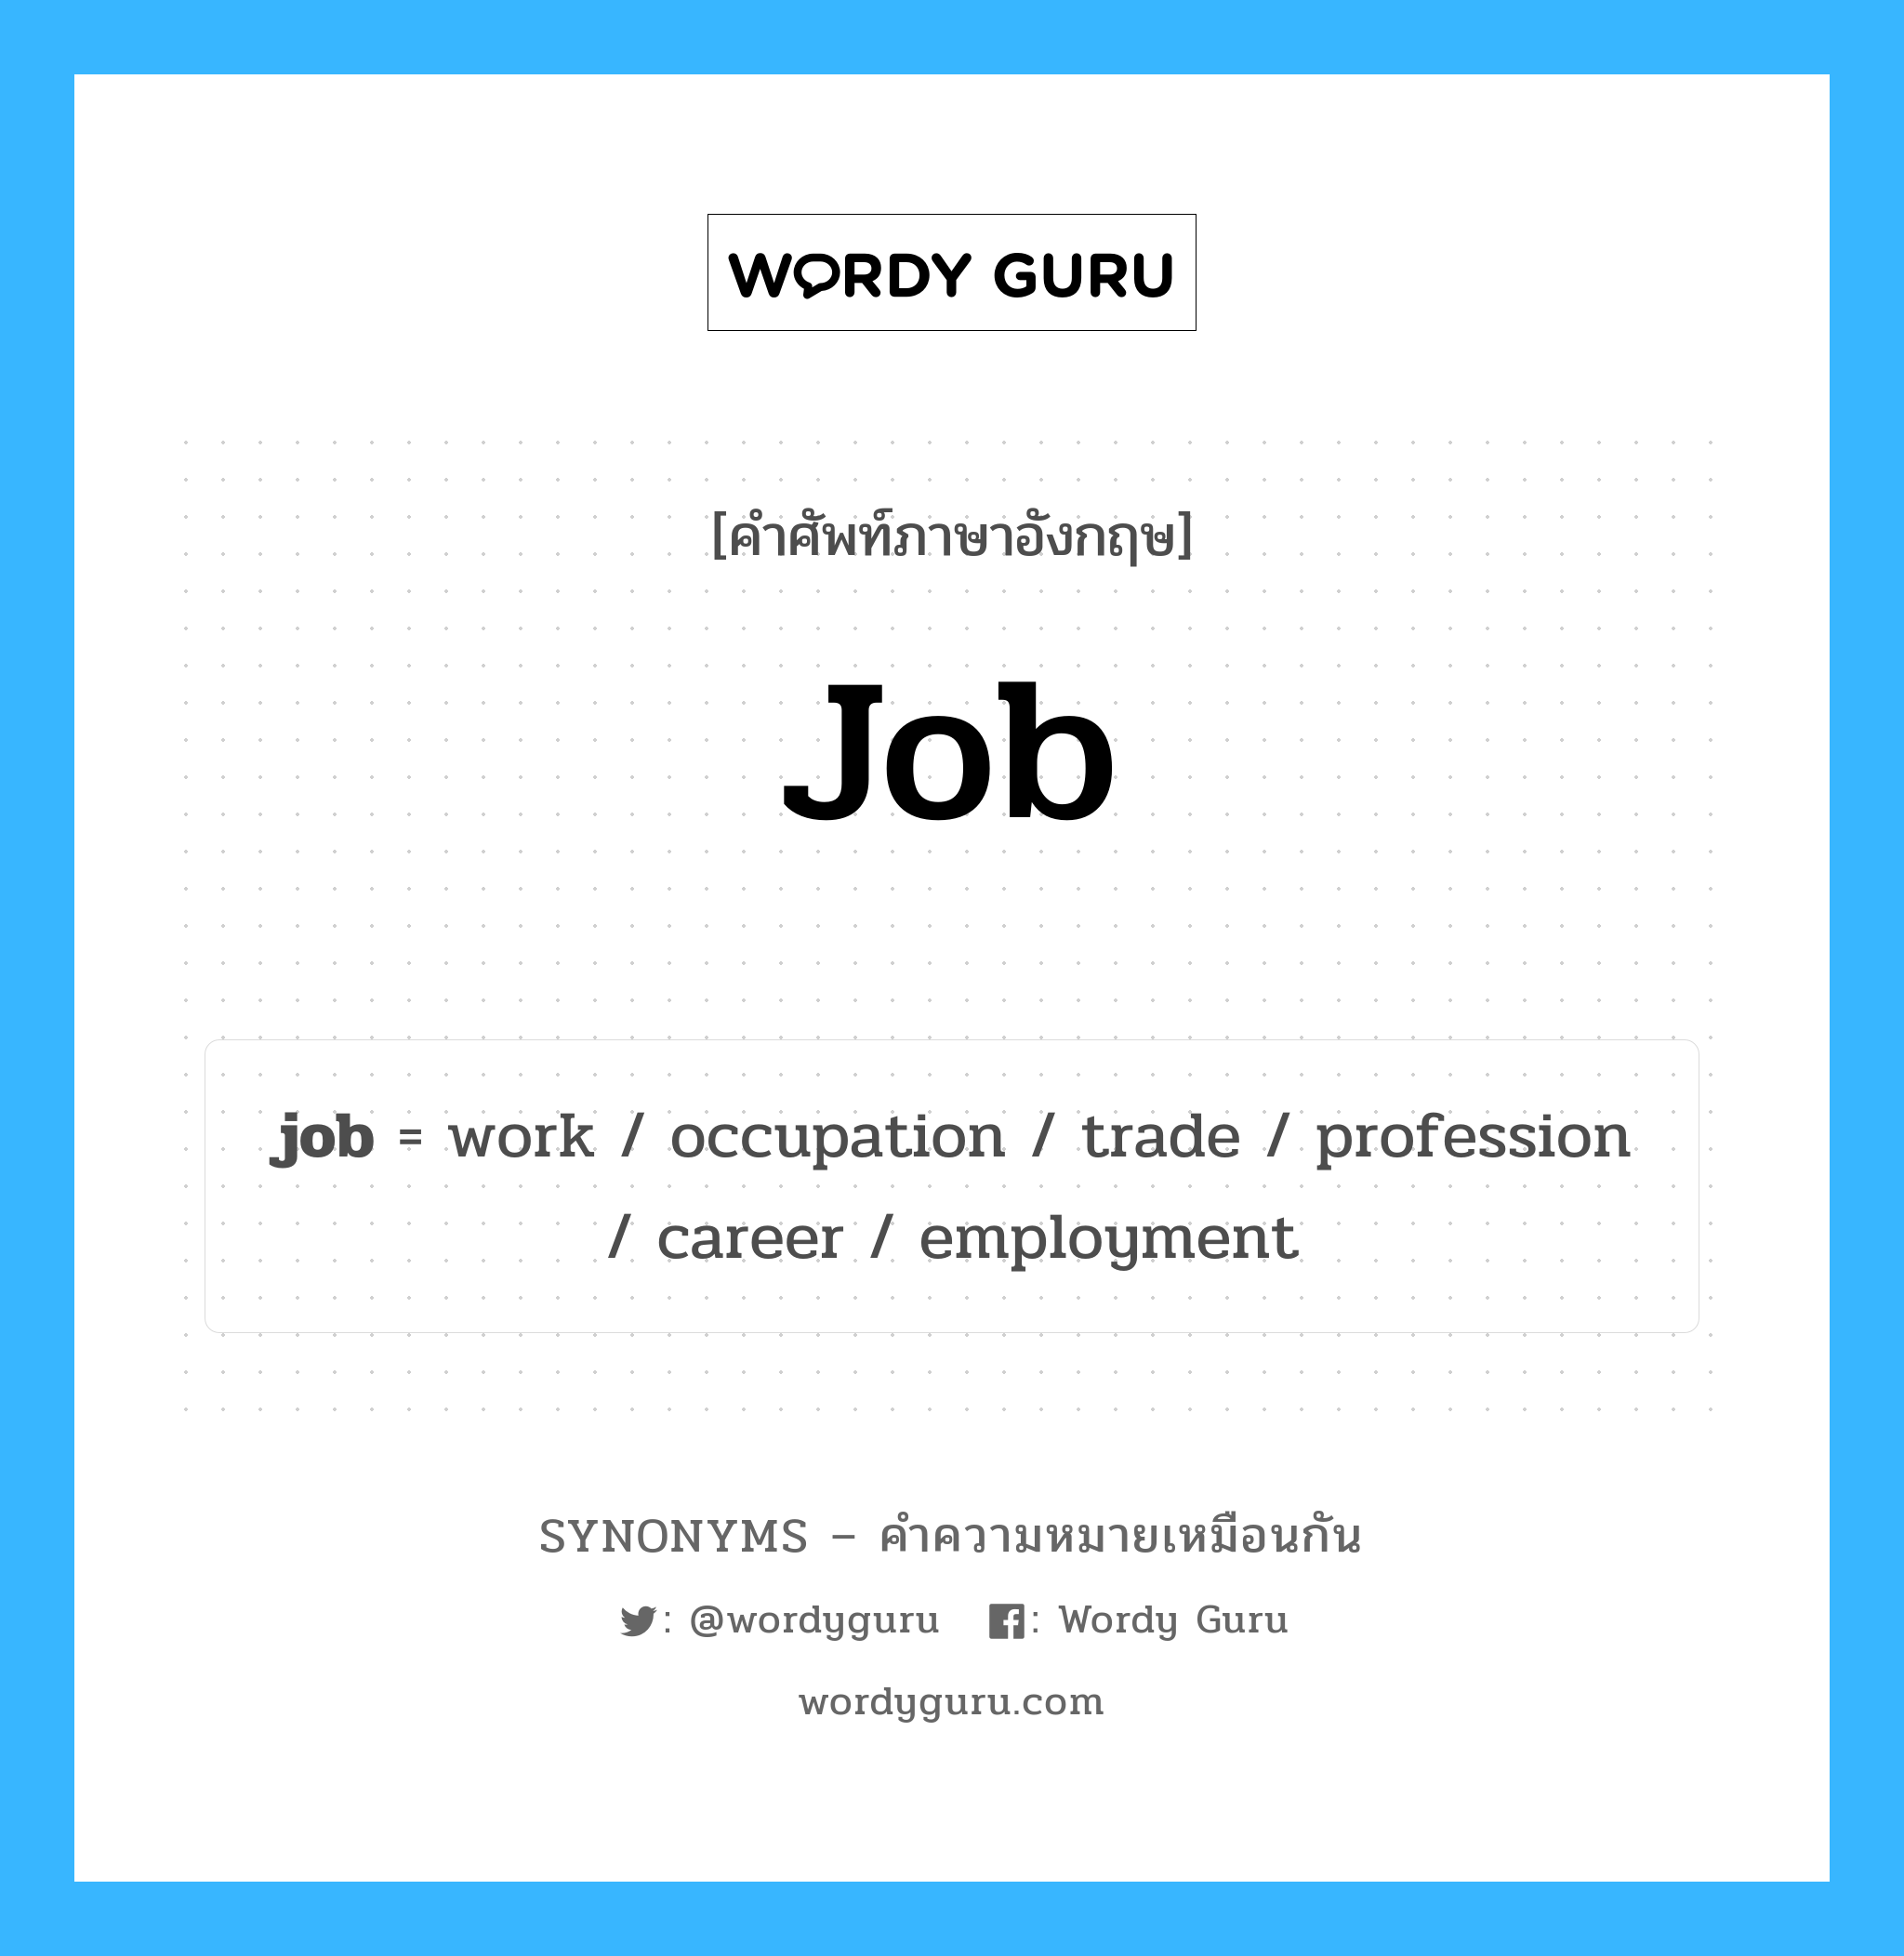 occupation เป็นหนึ่งใน job และมีคำอื่น ๆ อีกดังนี้, คำศัพท์ภาษาอังกฤษ occupation ความหมายคล้ายกันกับ job แปลว่า อาชีพ หมวด job